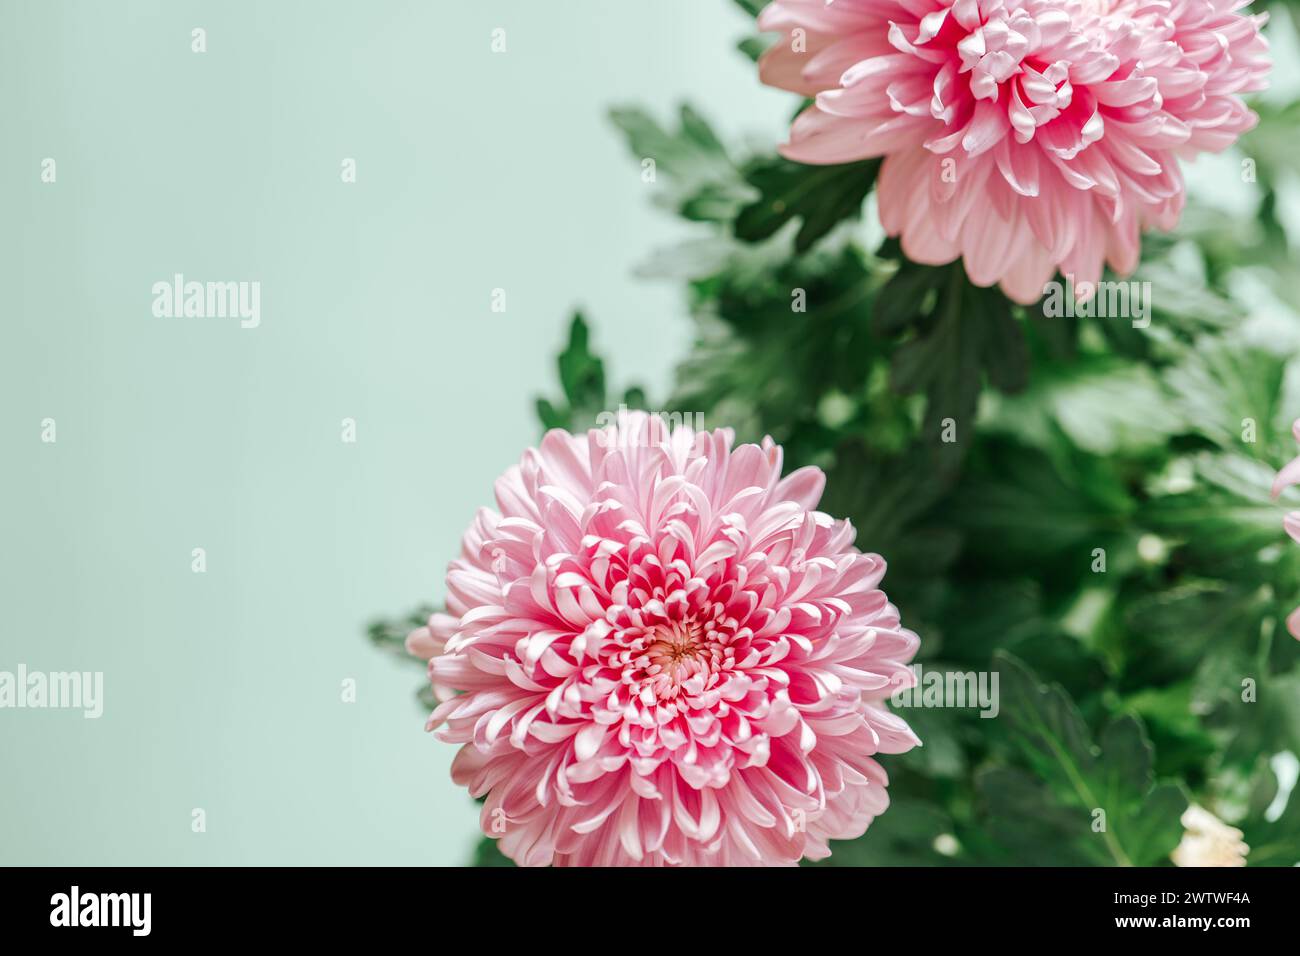 Chrysanthemen auf einem grünen Hintergrund.Chrysanthemen und Astern Blumen.zarte florale Hintergrund in Pastellfarben. Stockfoto